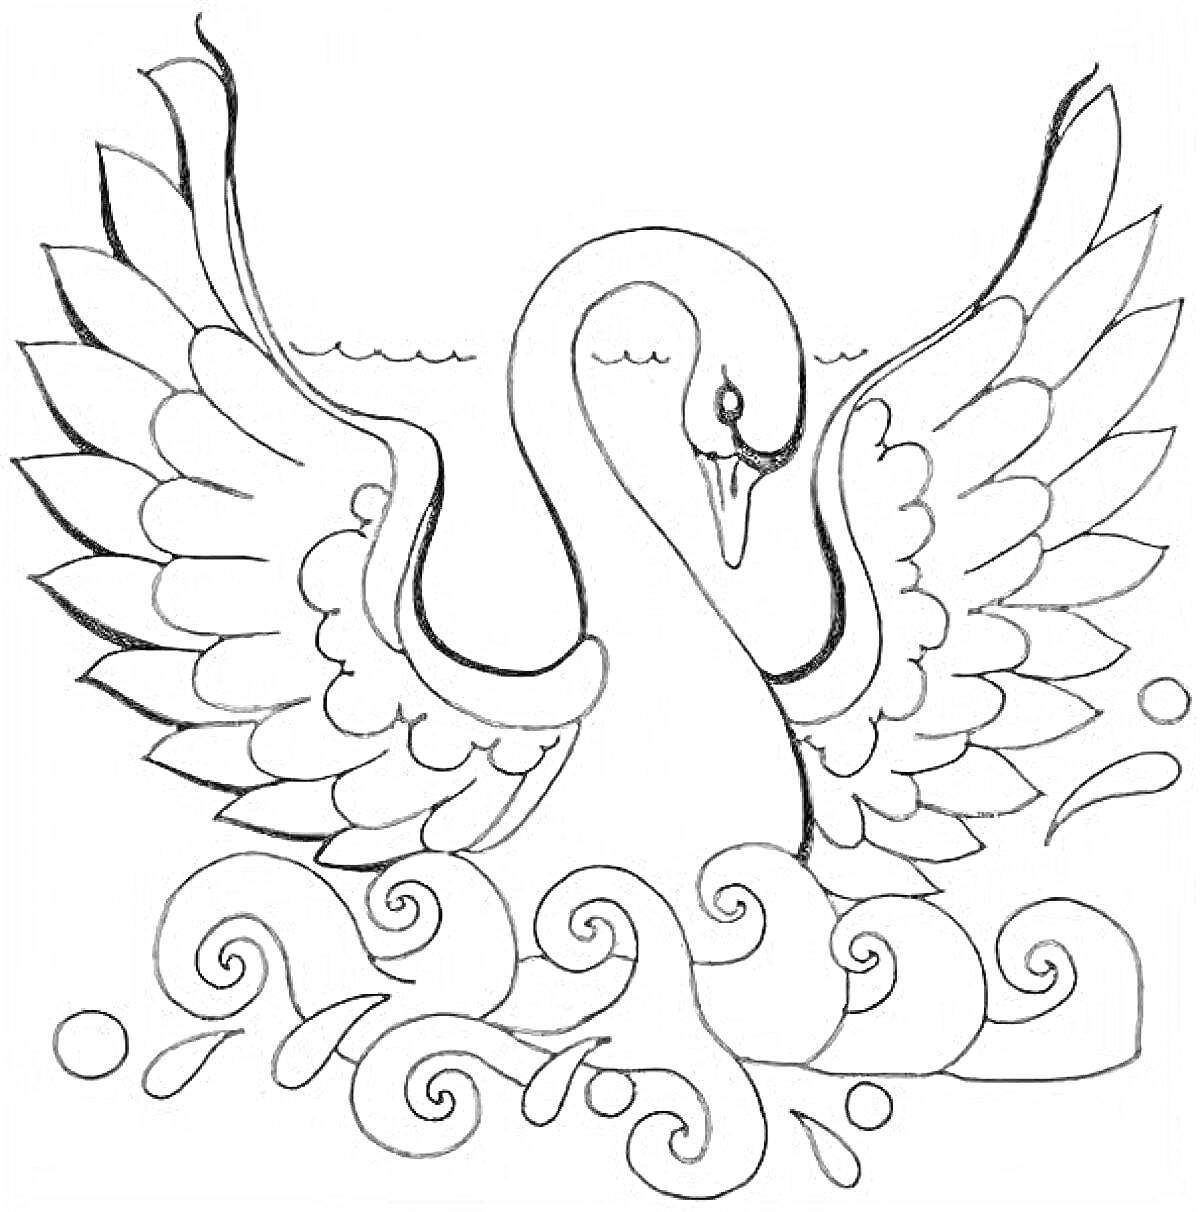 Раскраска Царевна-лебедь из сказки о царе Салтане с расправленными крыльями на фоне волн